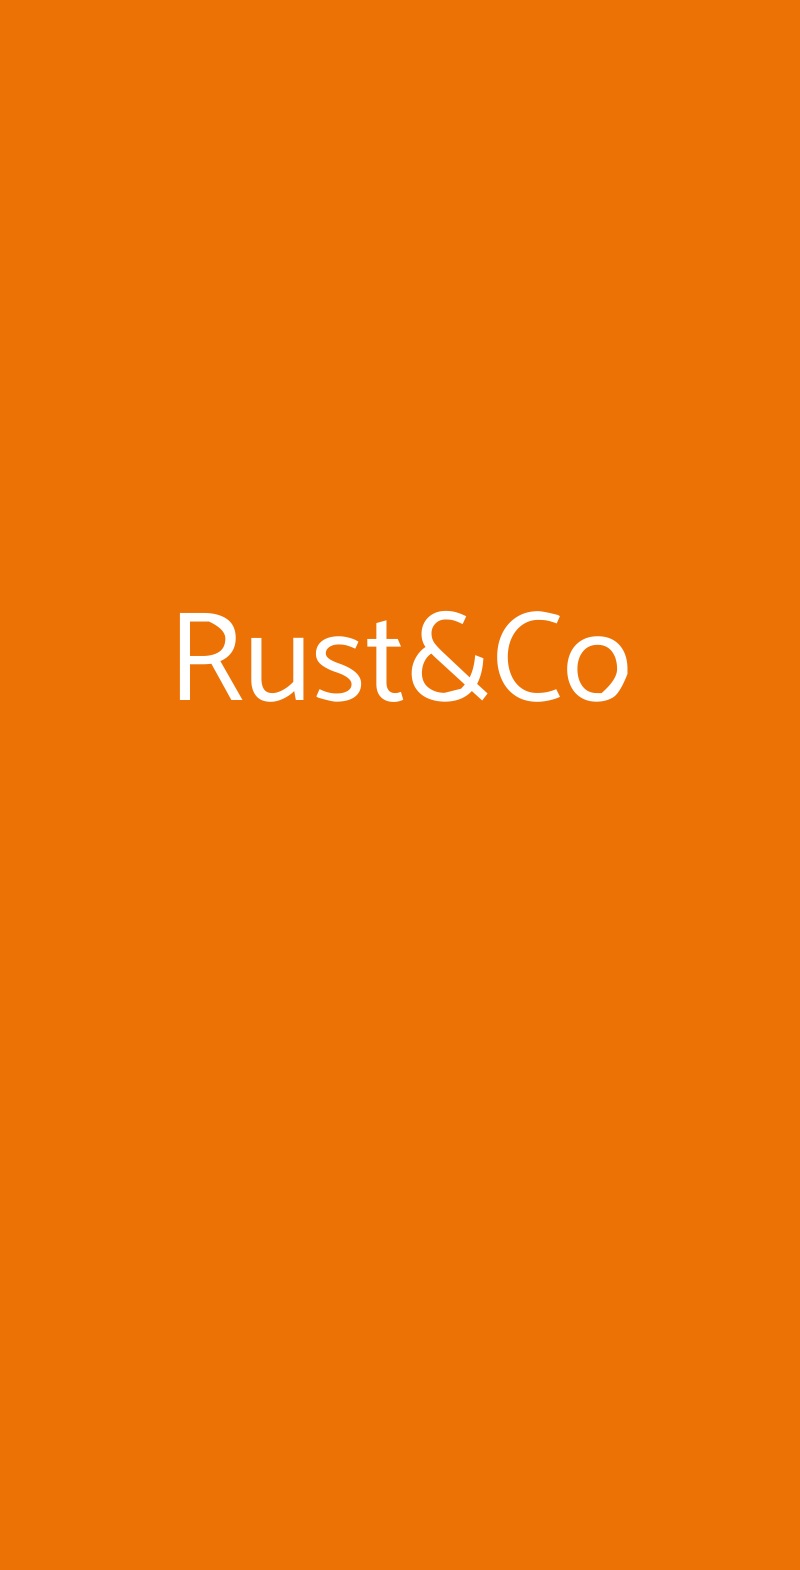 Rust&Co Reggio Calabria menù 1 pagina